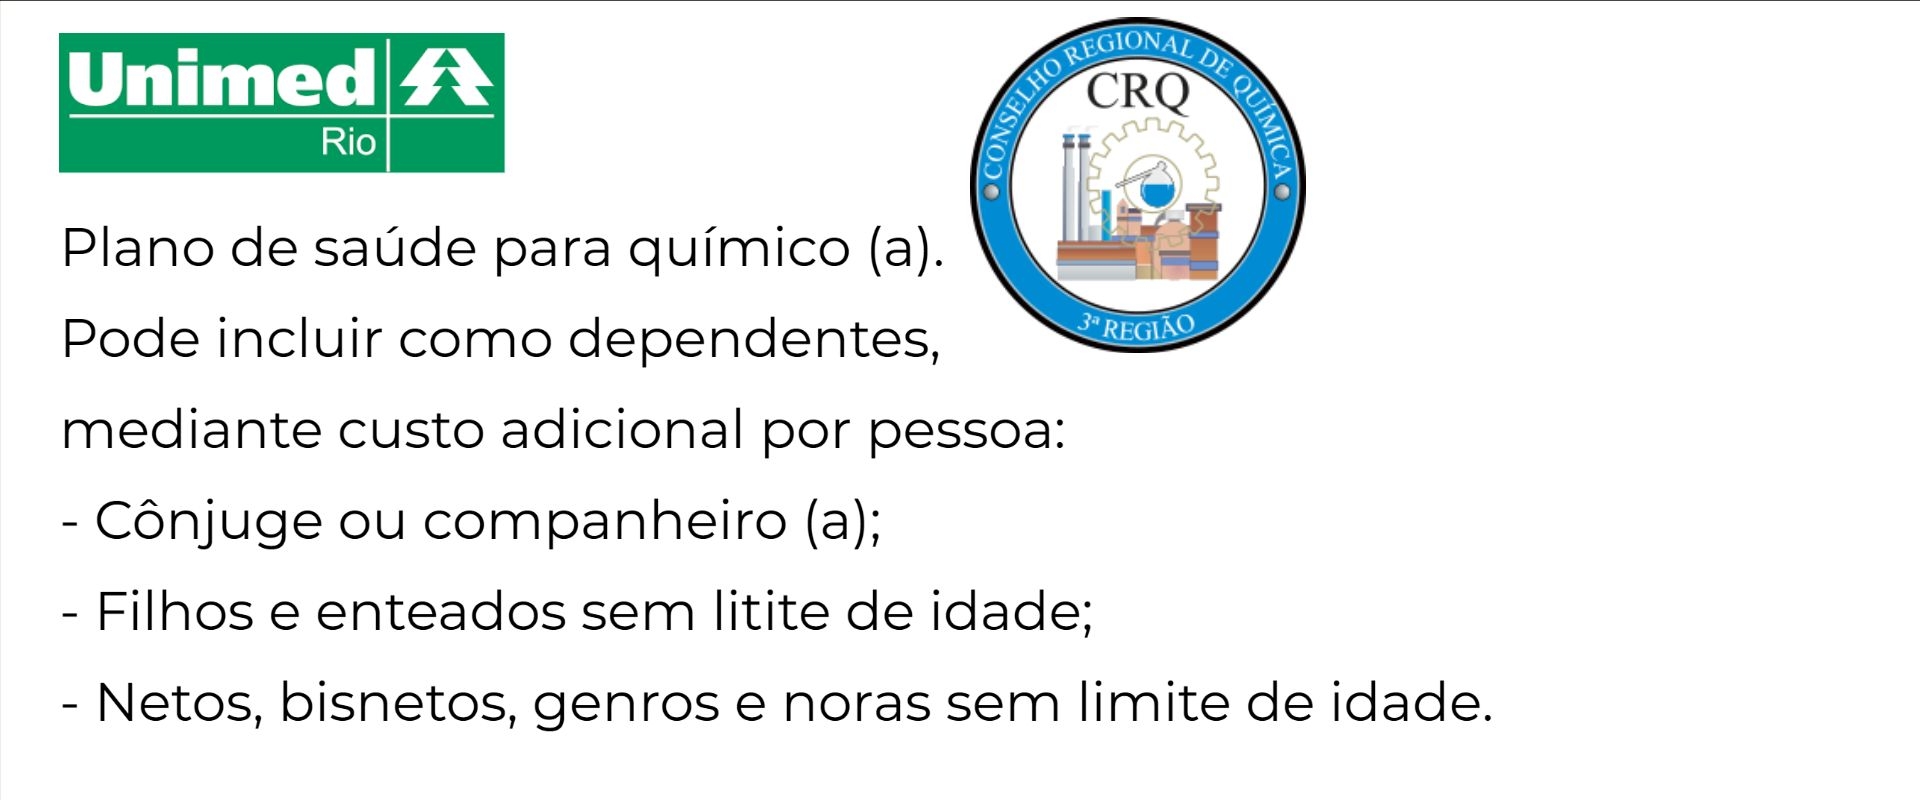 Unimed Rio CRQ 5-RJ